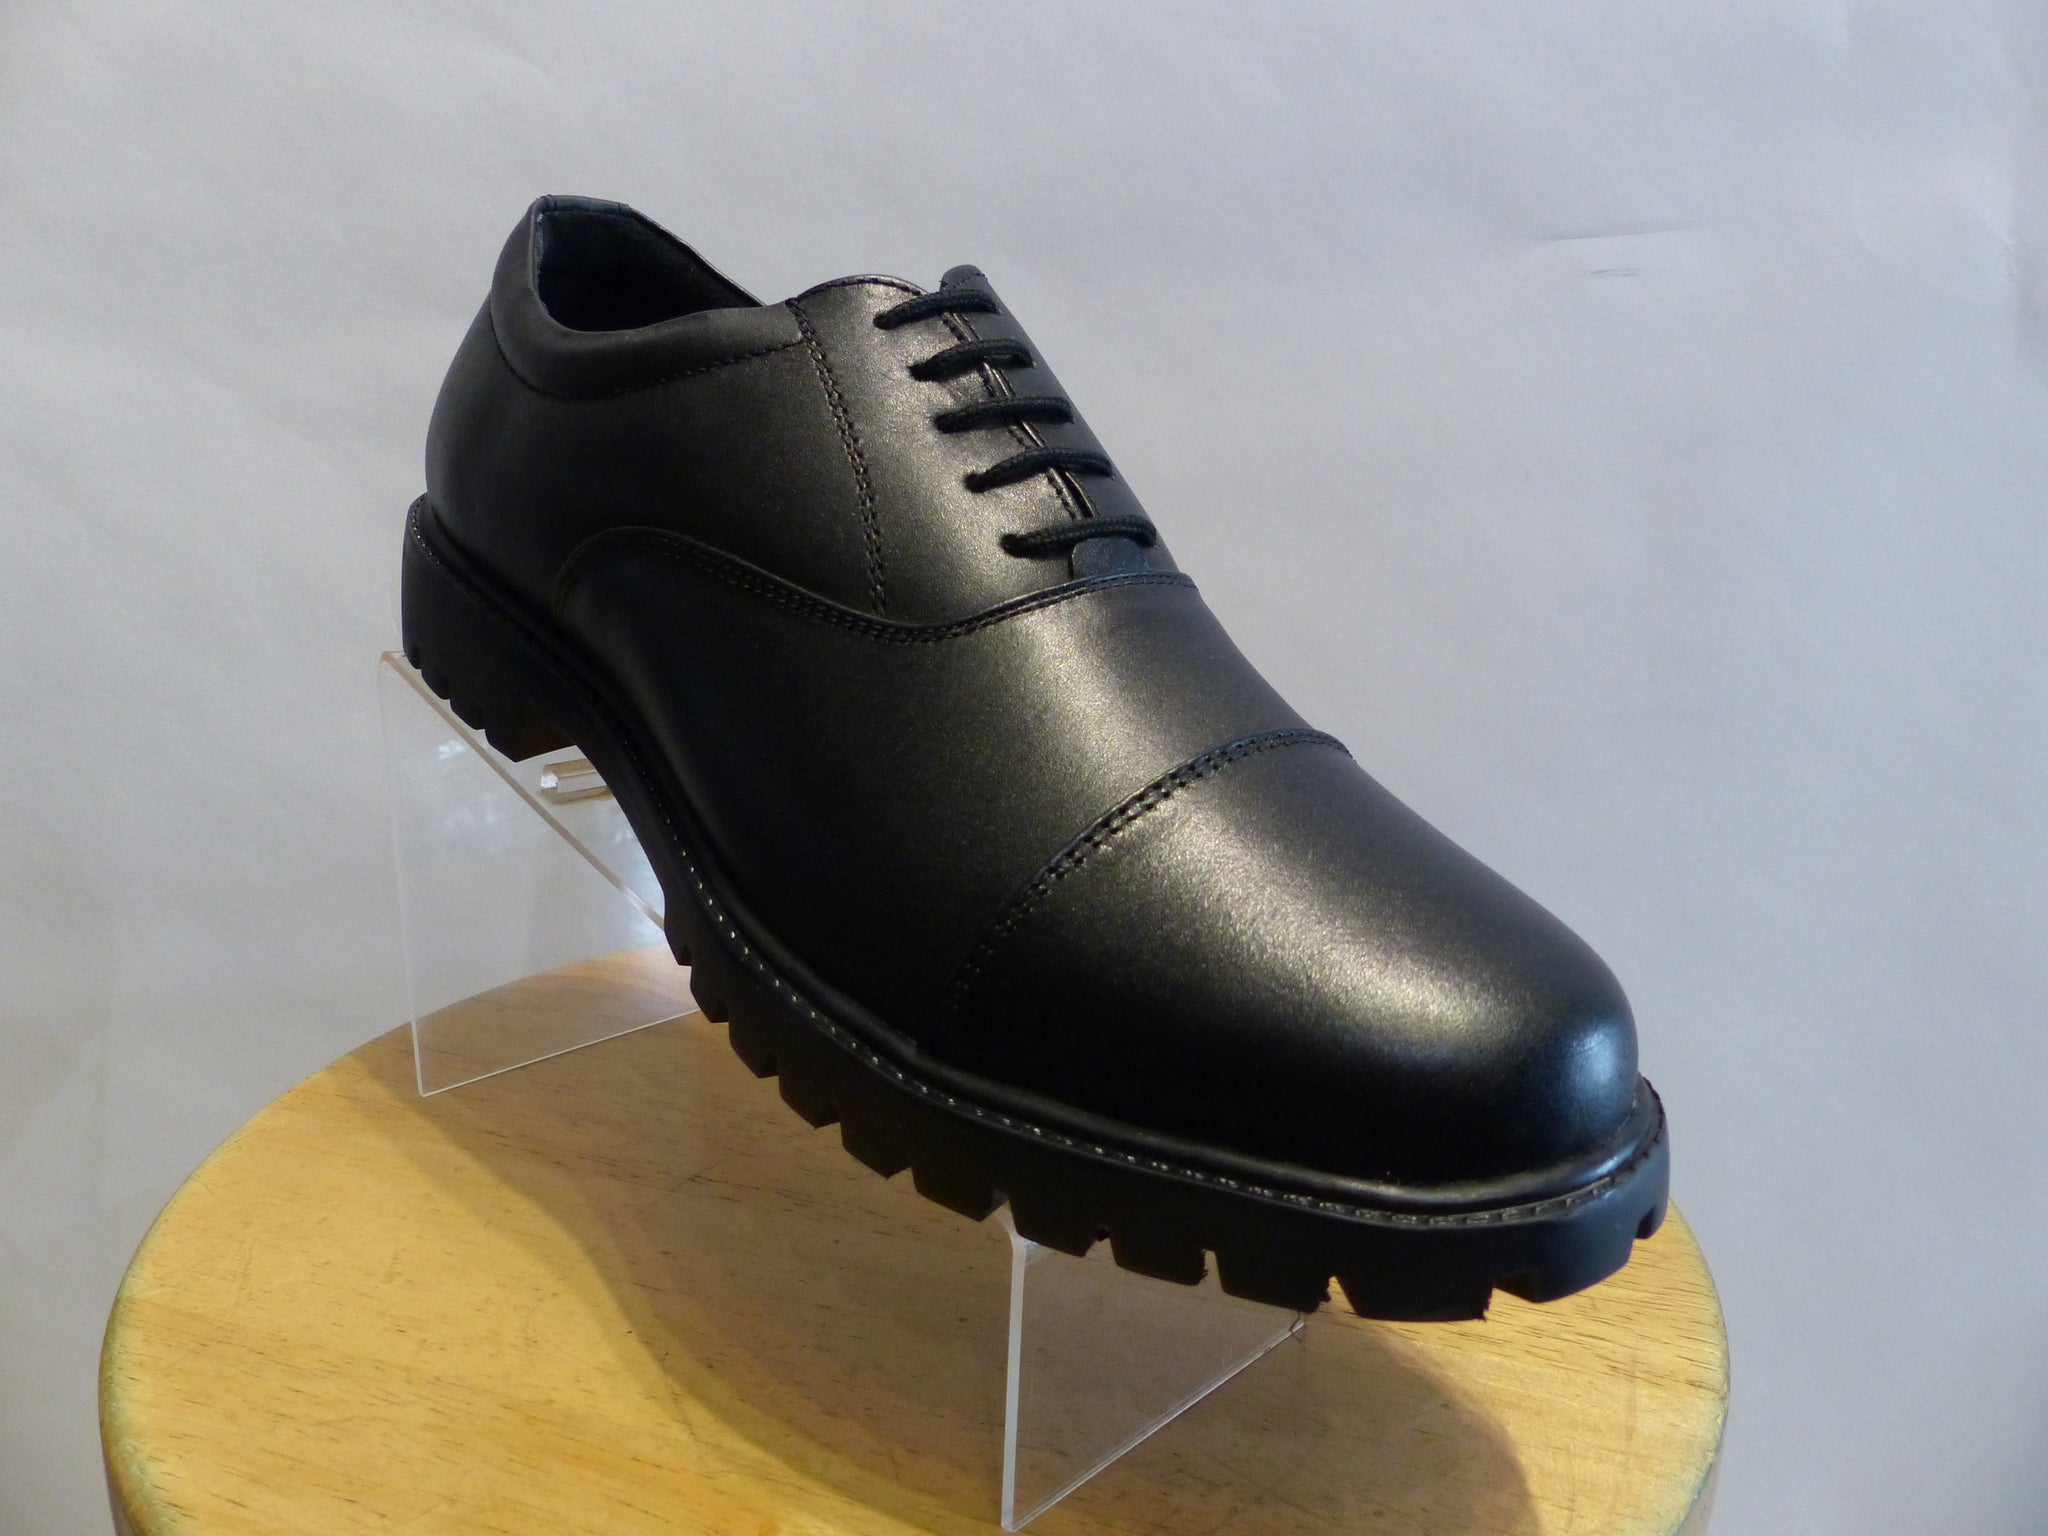 uniform black shoes